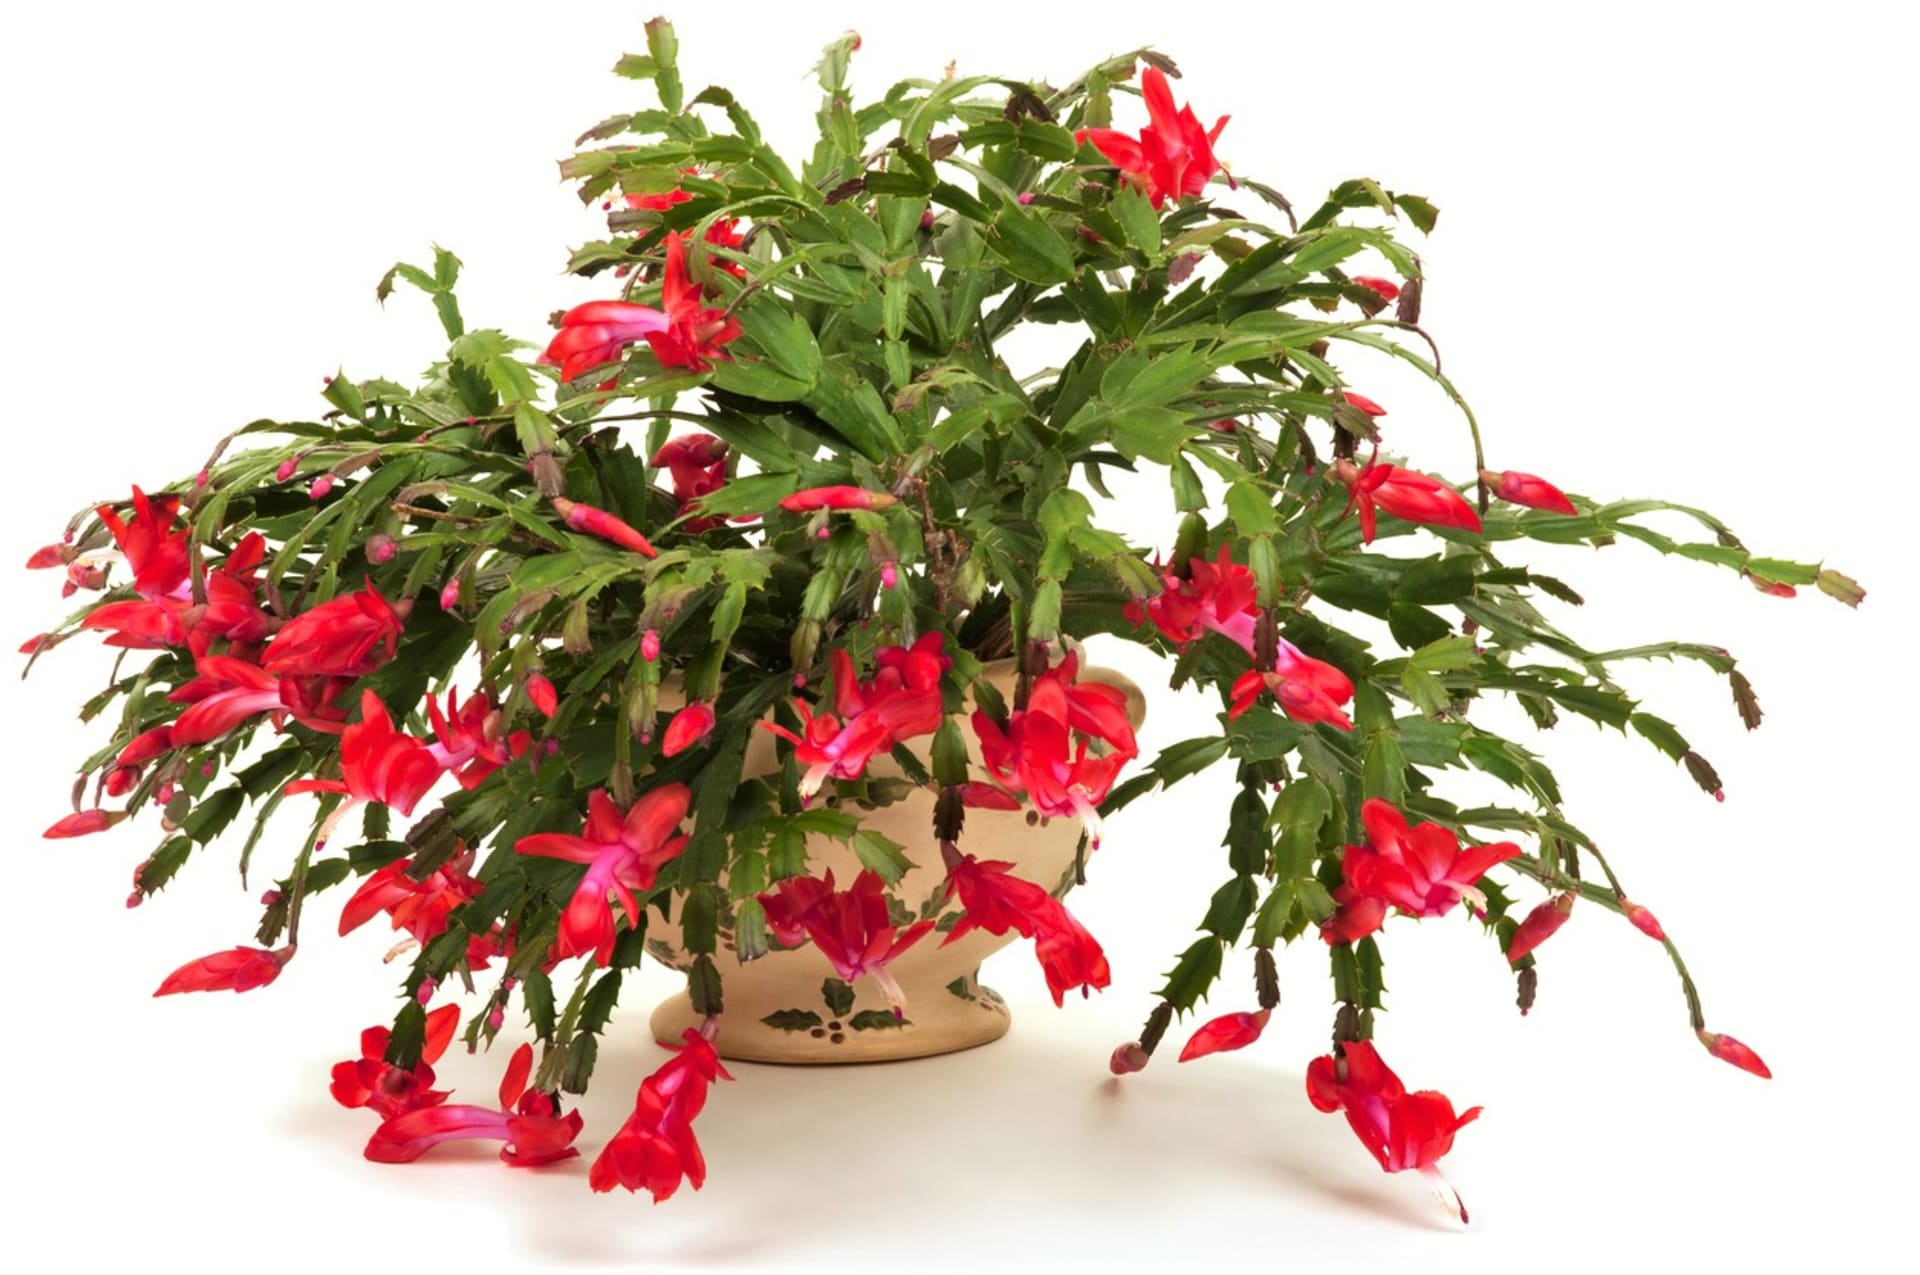 Osvědčenou klasikou je vánoční kaktus. Během svátečního období vytváří množství květů. Vykvete však jen tehdy, pokud se o něj správně staráme. 